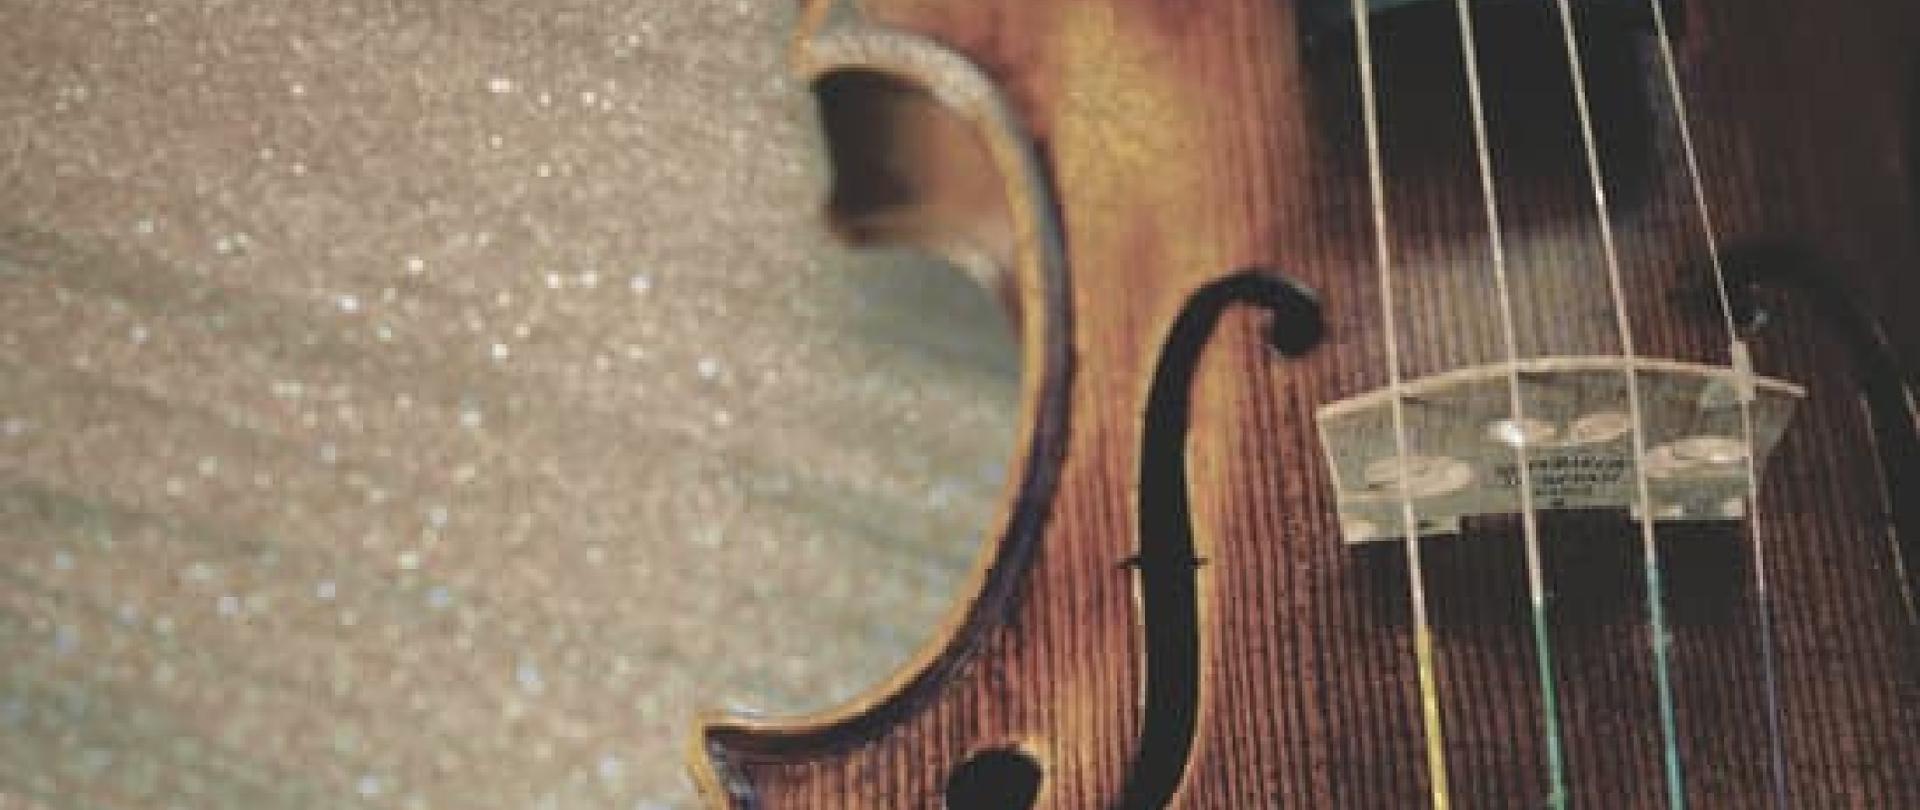 Na górze zdjęcie skrzypiec, tło kremowe, czarny napis informujący o popisie uczniów klasy skrzypiec i gitary 5 grudnia 2023 r. o godz. 17.30